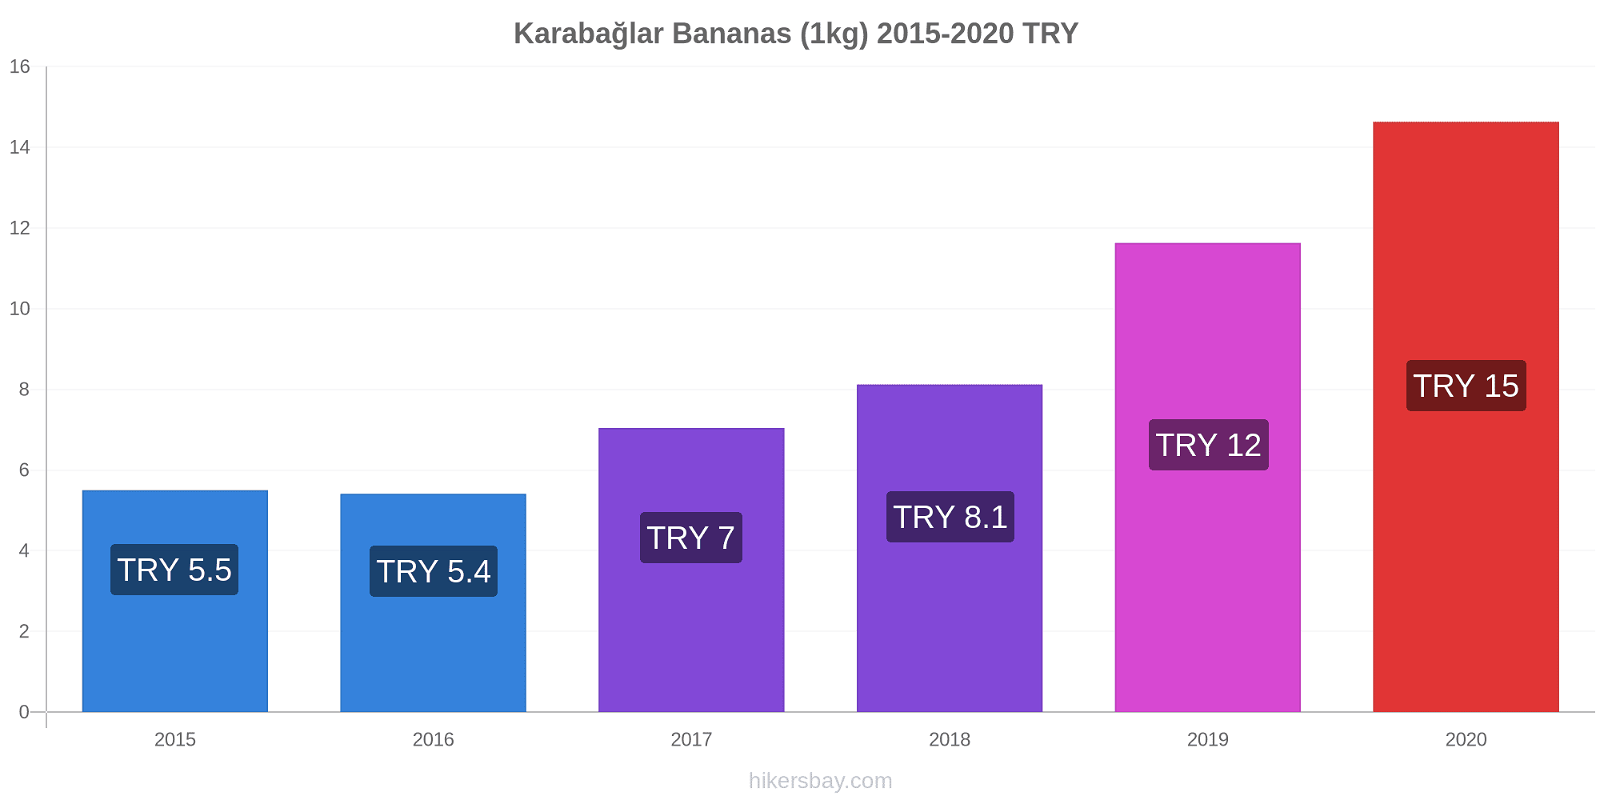 Karabağlar variação de preço Banana (1kg) hikersbay.com